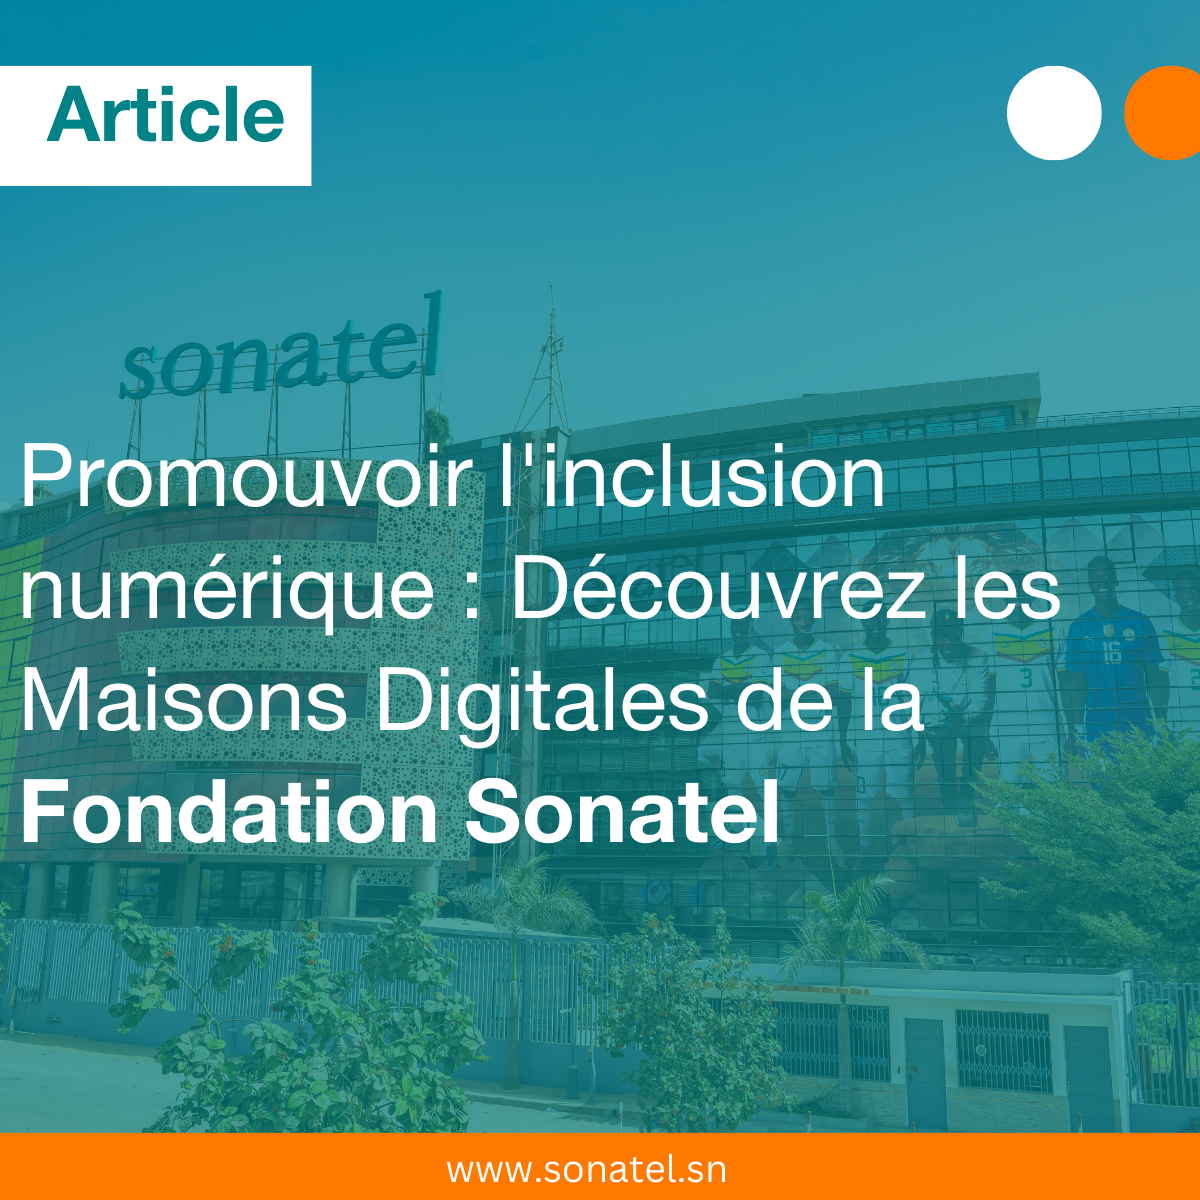 Fondation Sonatel et inclusion numérique : découvrez les Maisons Digitales